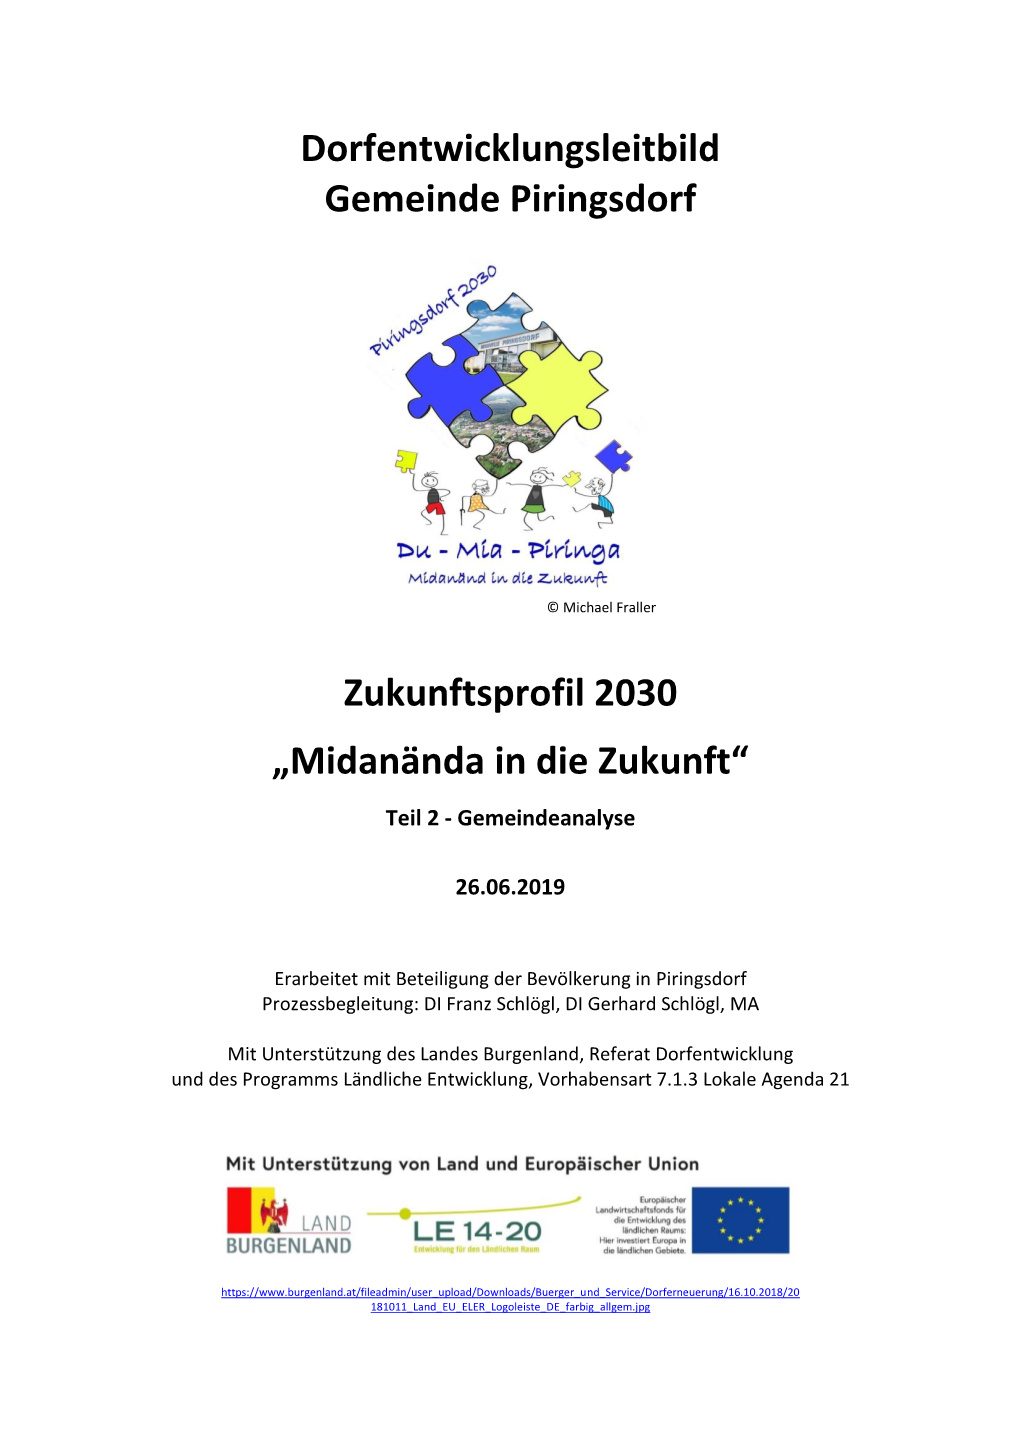 Dorfentwicklungsleitbild Gemeinde Piringsdorf Zukunftsprofil 2030 „Midanända in Die Zukunft“